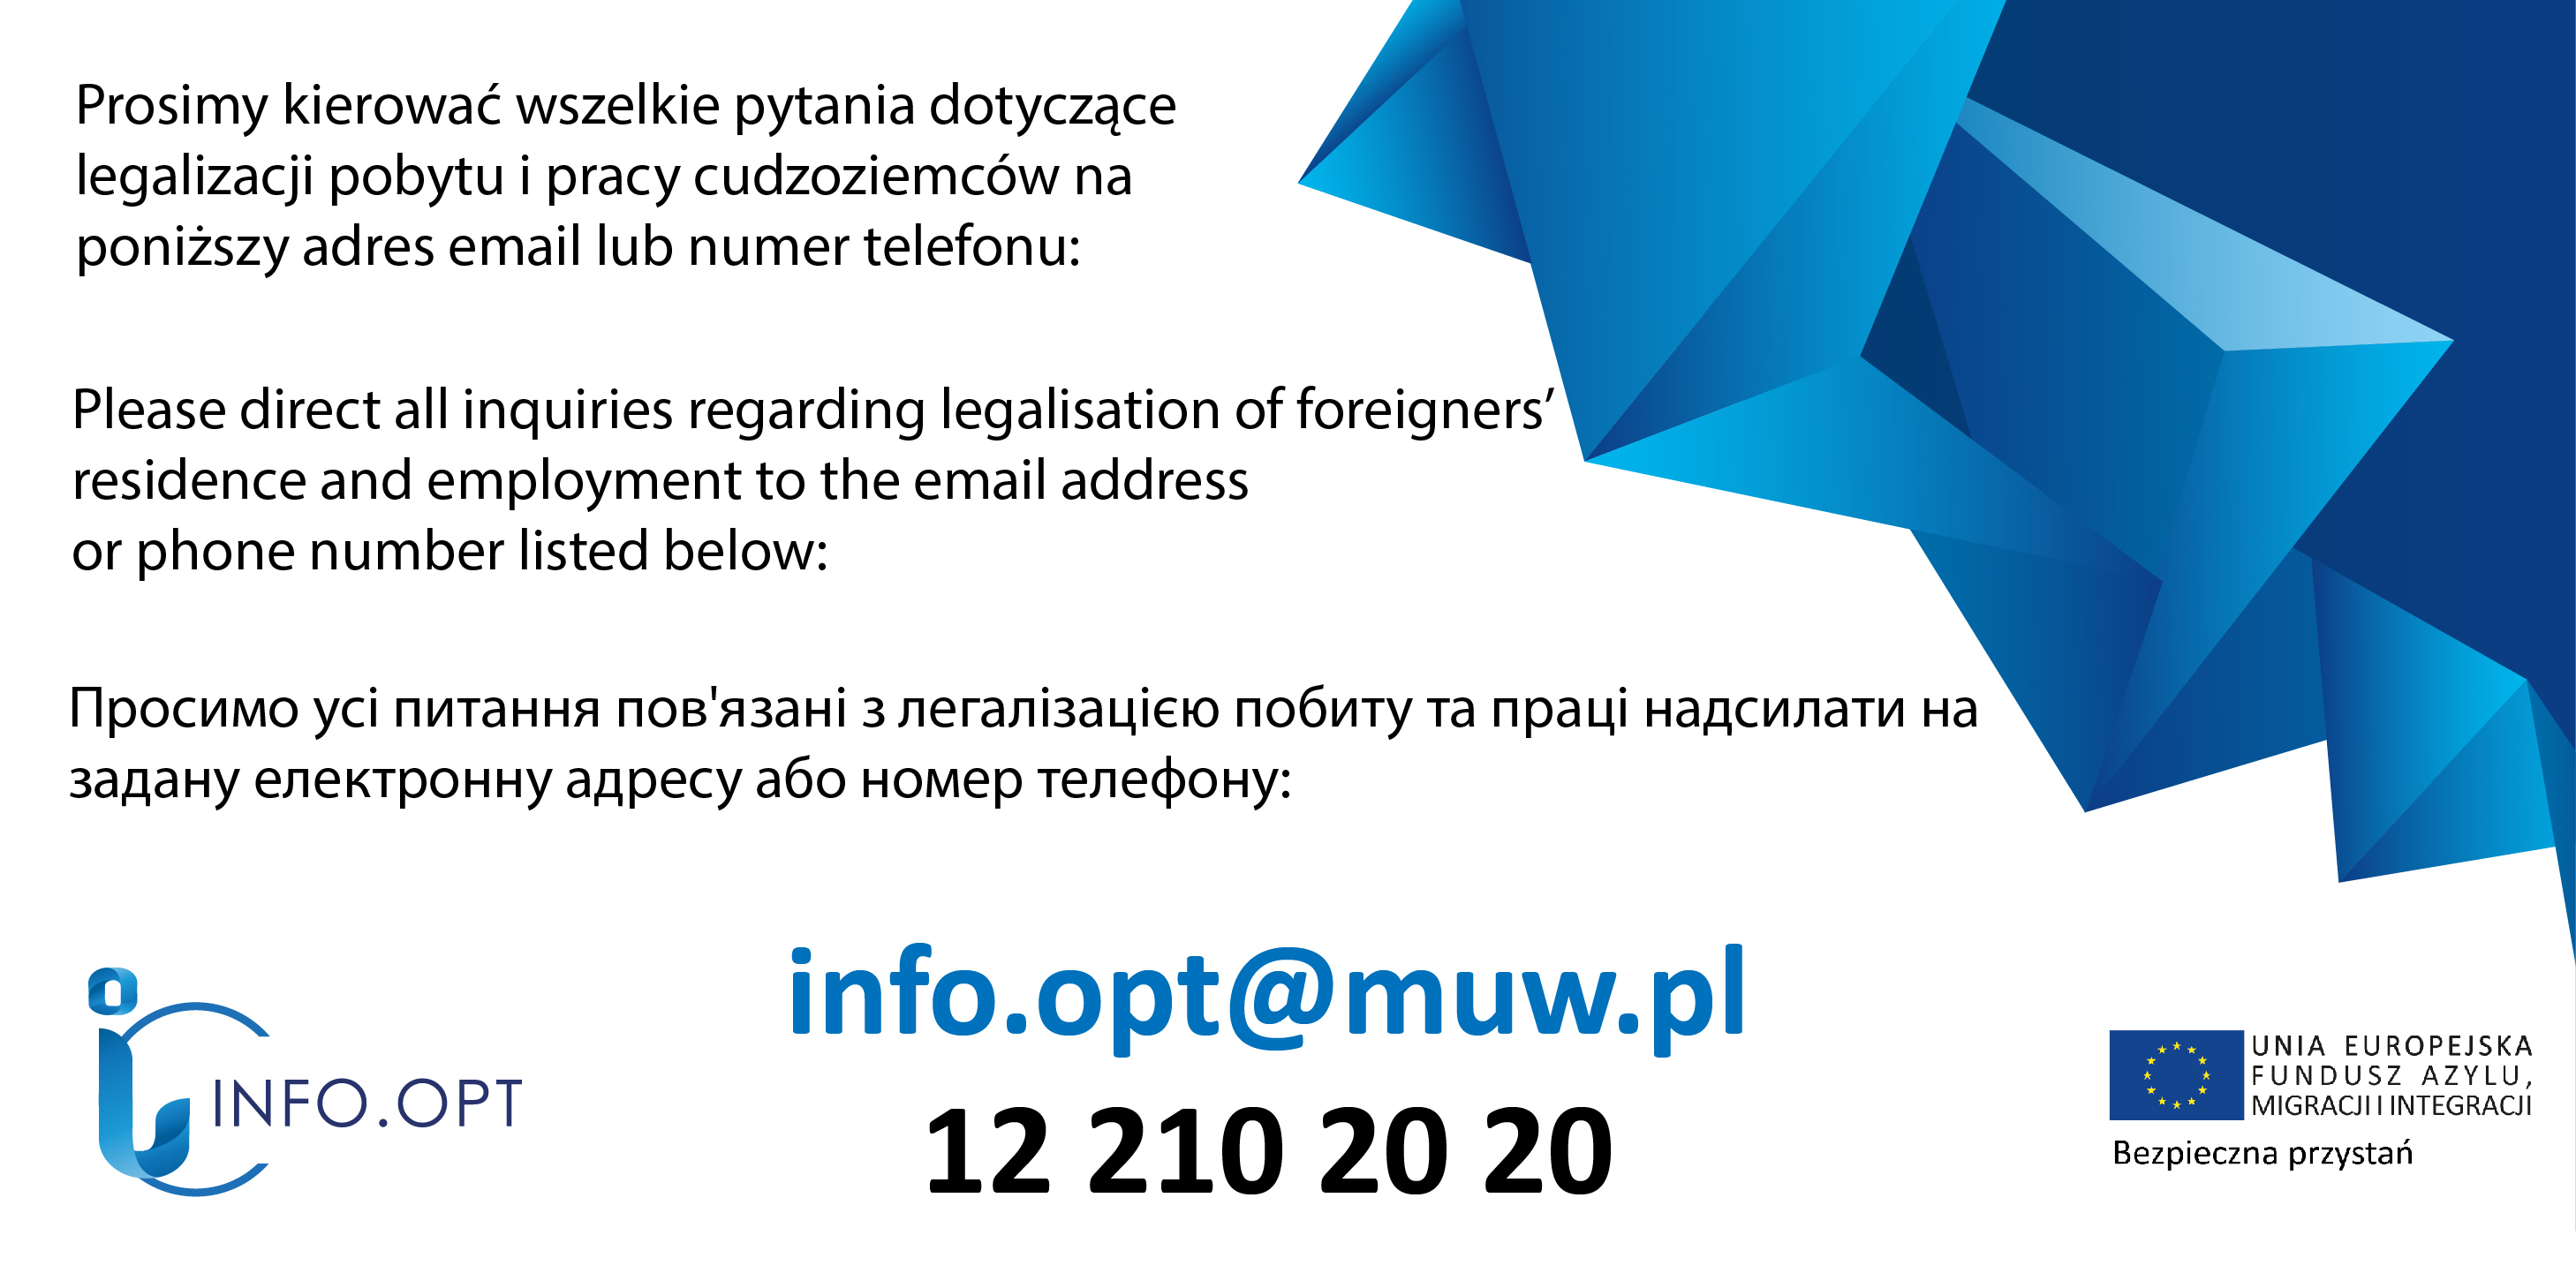 
		Informacja o kierowaniu wszelkich zapytań dotyczących legalizacji pobytu i pracy cudzoziemców na wskazany adres email lub telefon: info.opt@muw.pl, 12 39 21 804, 12 39 21 868